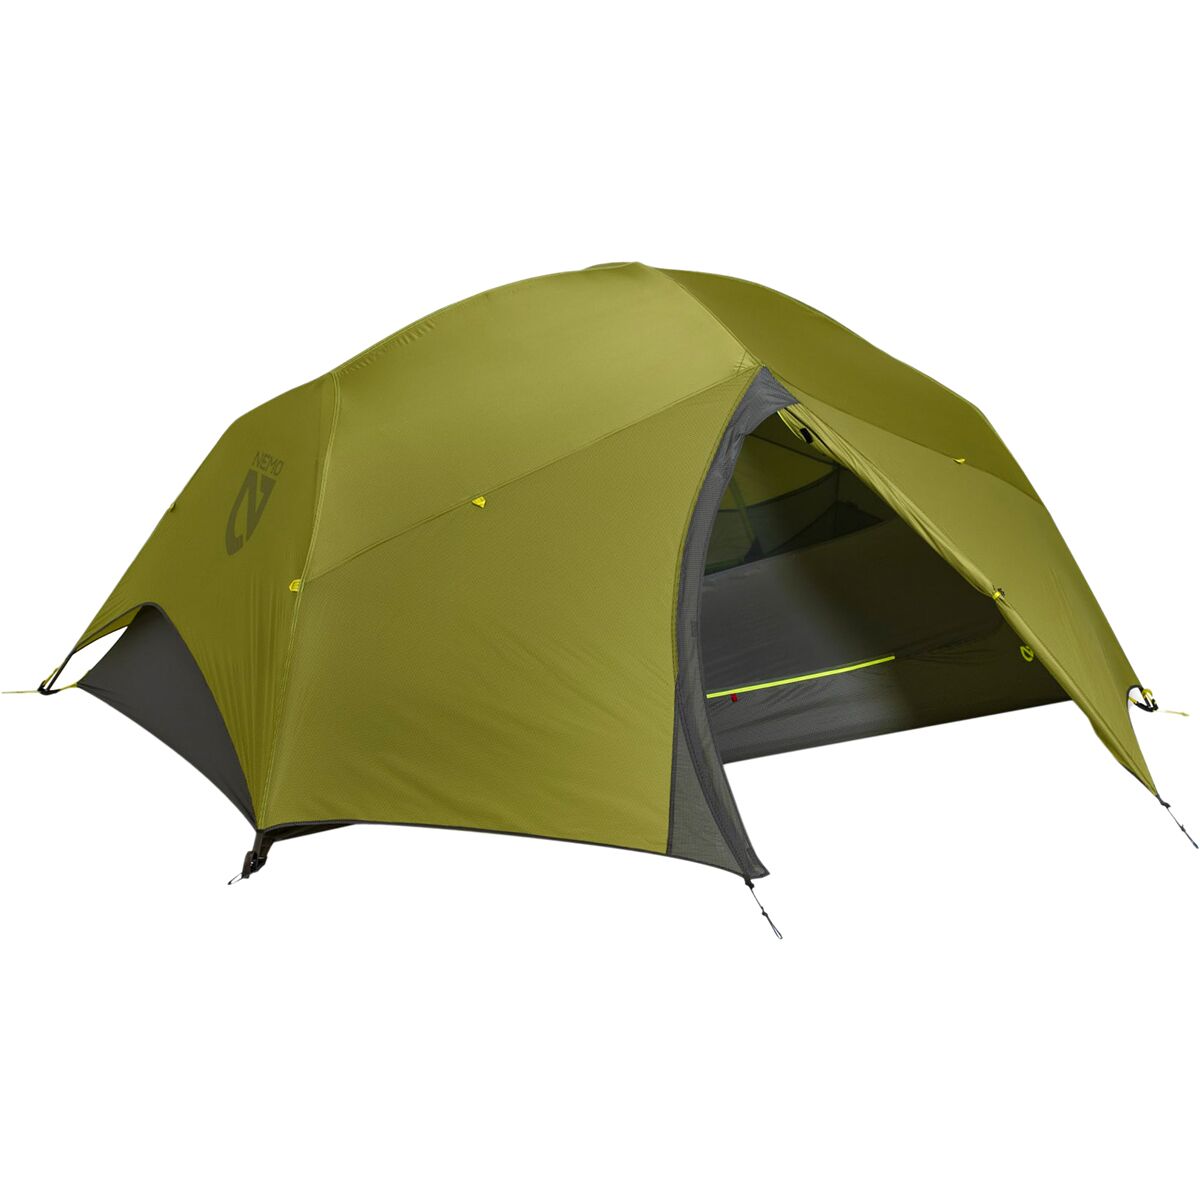 NEMO Equipment Inc. Dagger OSMO Tent: 2-Person 3-Season